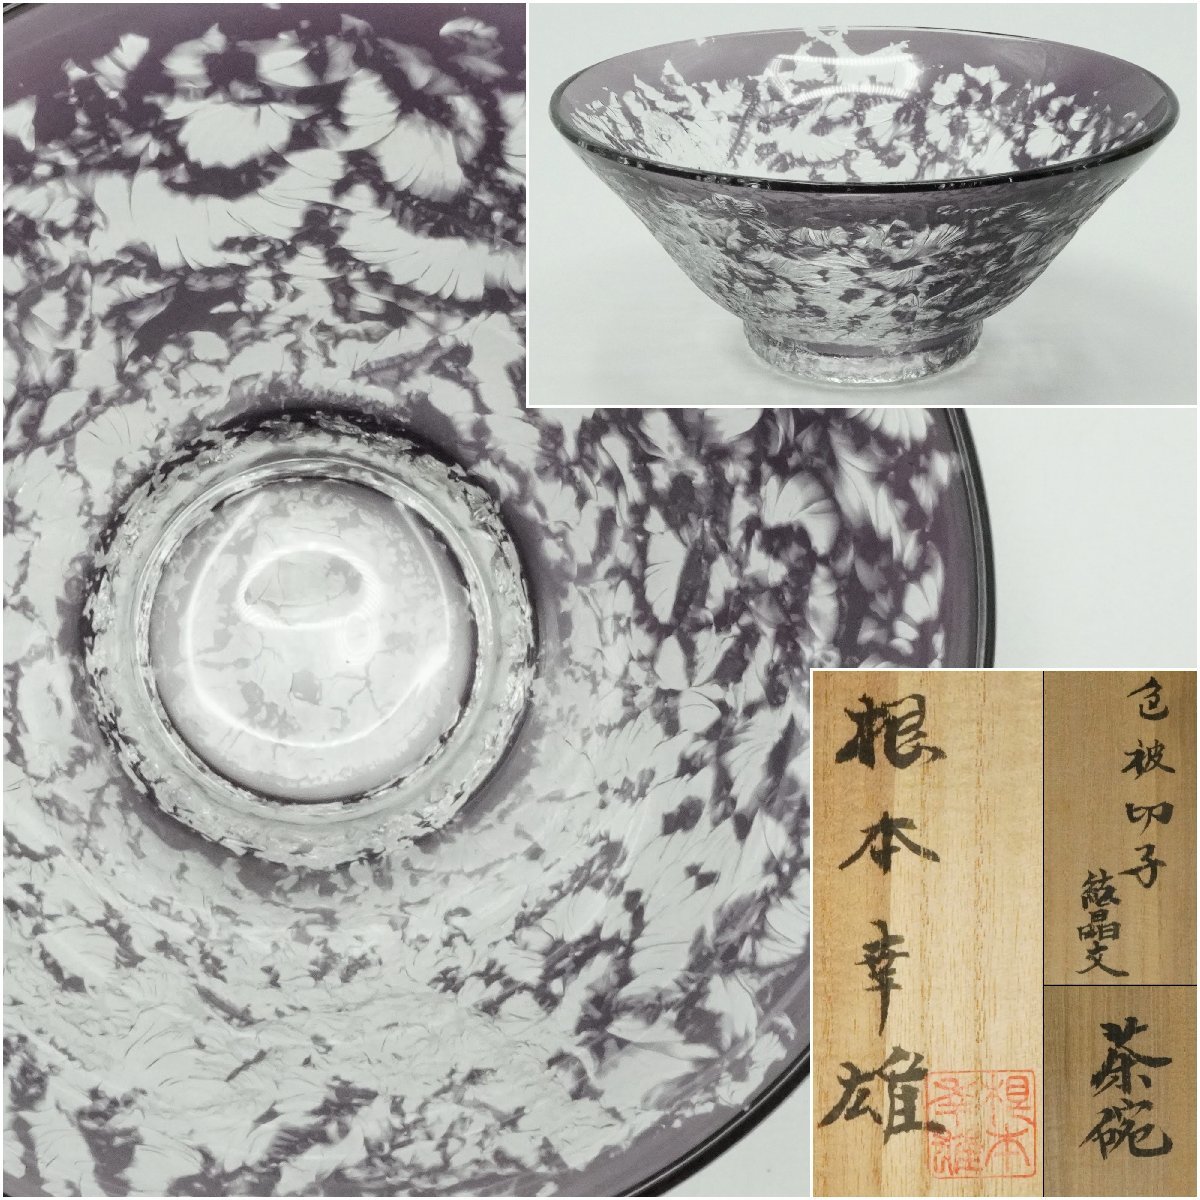 伝統工芸士 根本幸雄作 江戸切子 色被せ切子 結晶文 茶碗 紫 公式